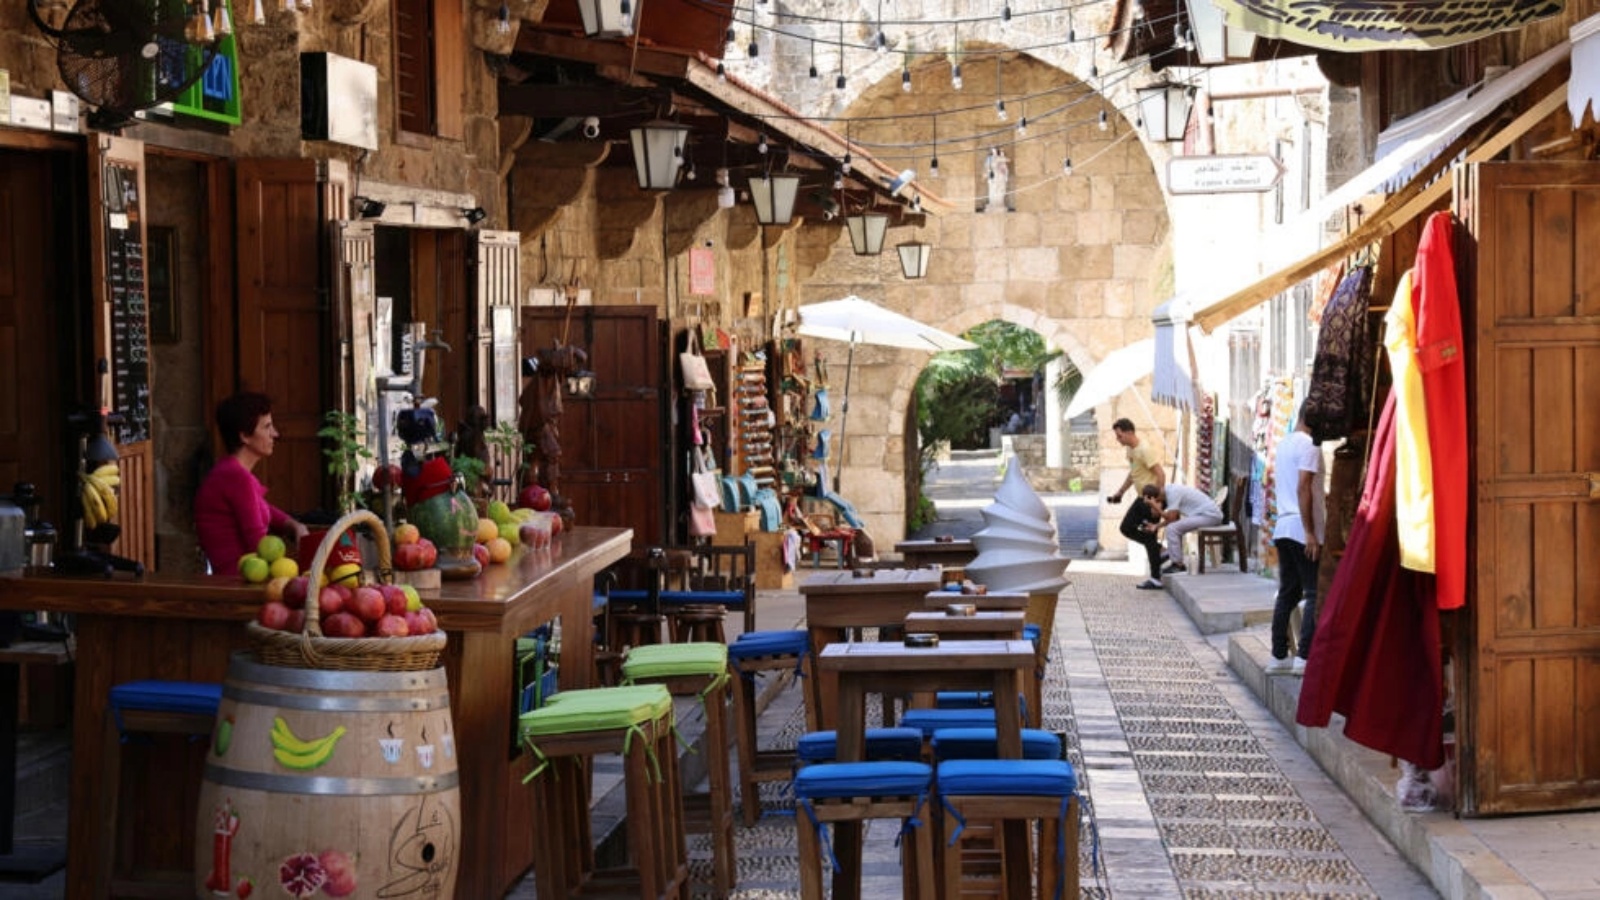 مطعم في مدينة جبيل السياحية الأثرية في لبنان خال من الروّاد في العاشر من نوفمبر 2023 